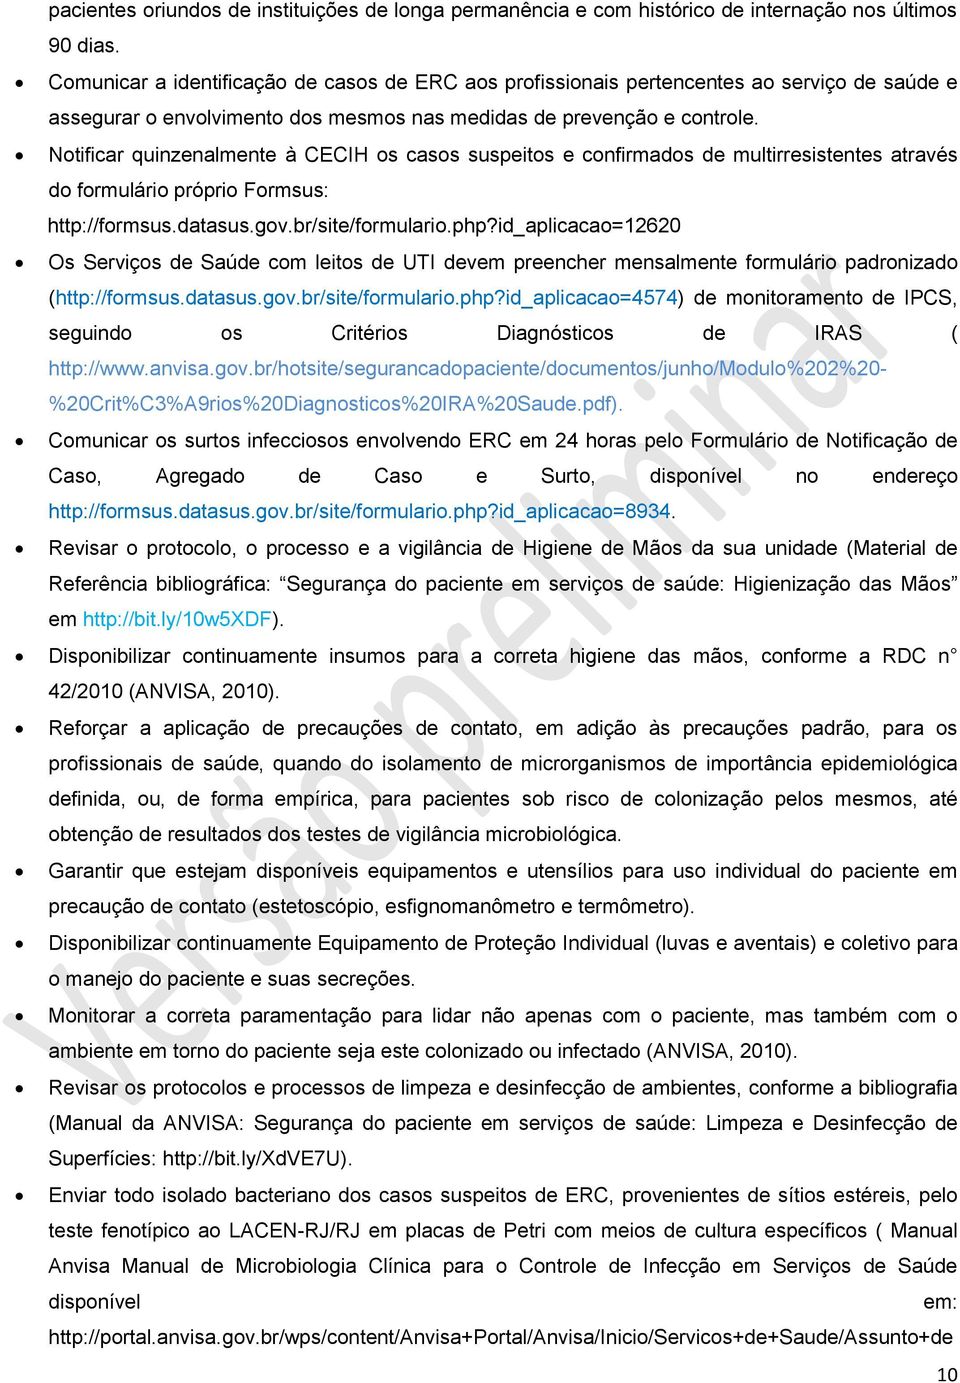 Notificar quinzenalmente de multirresistentes através do formulário próprio Formsus: http://formsus.datasus.gov.br/site/formulario.php?